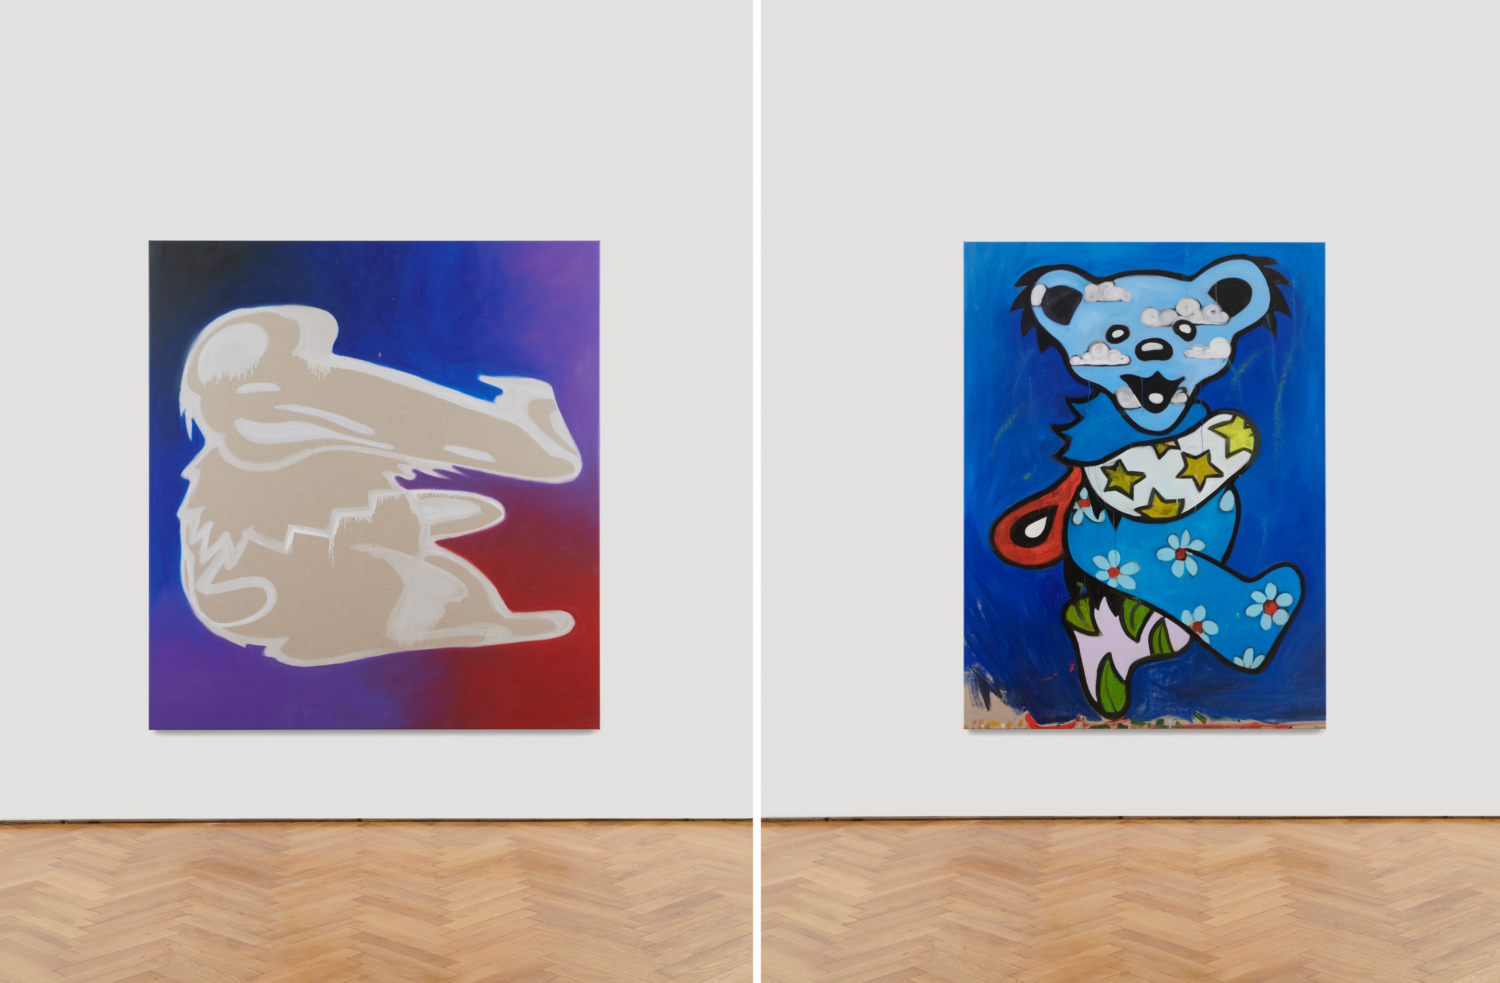 Zwei Gemälde der "Grateful Dead" Bären in beige und blau gehalten.